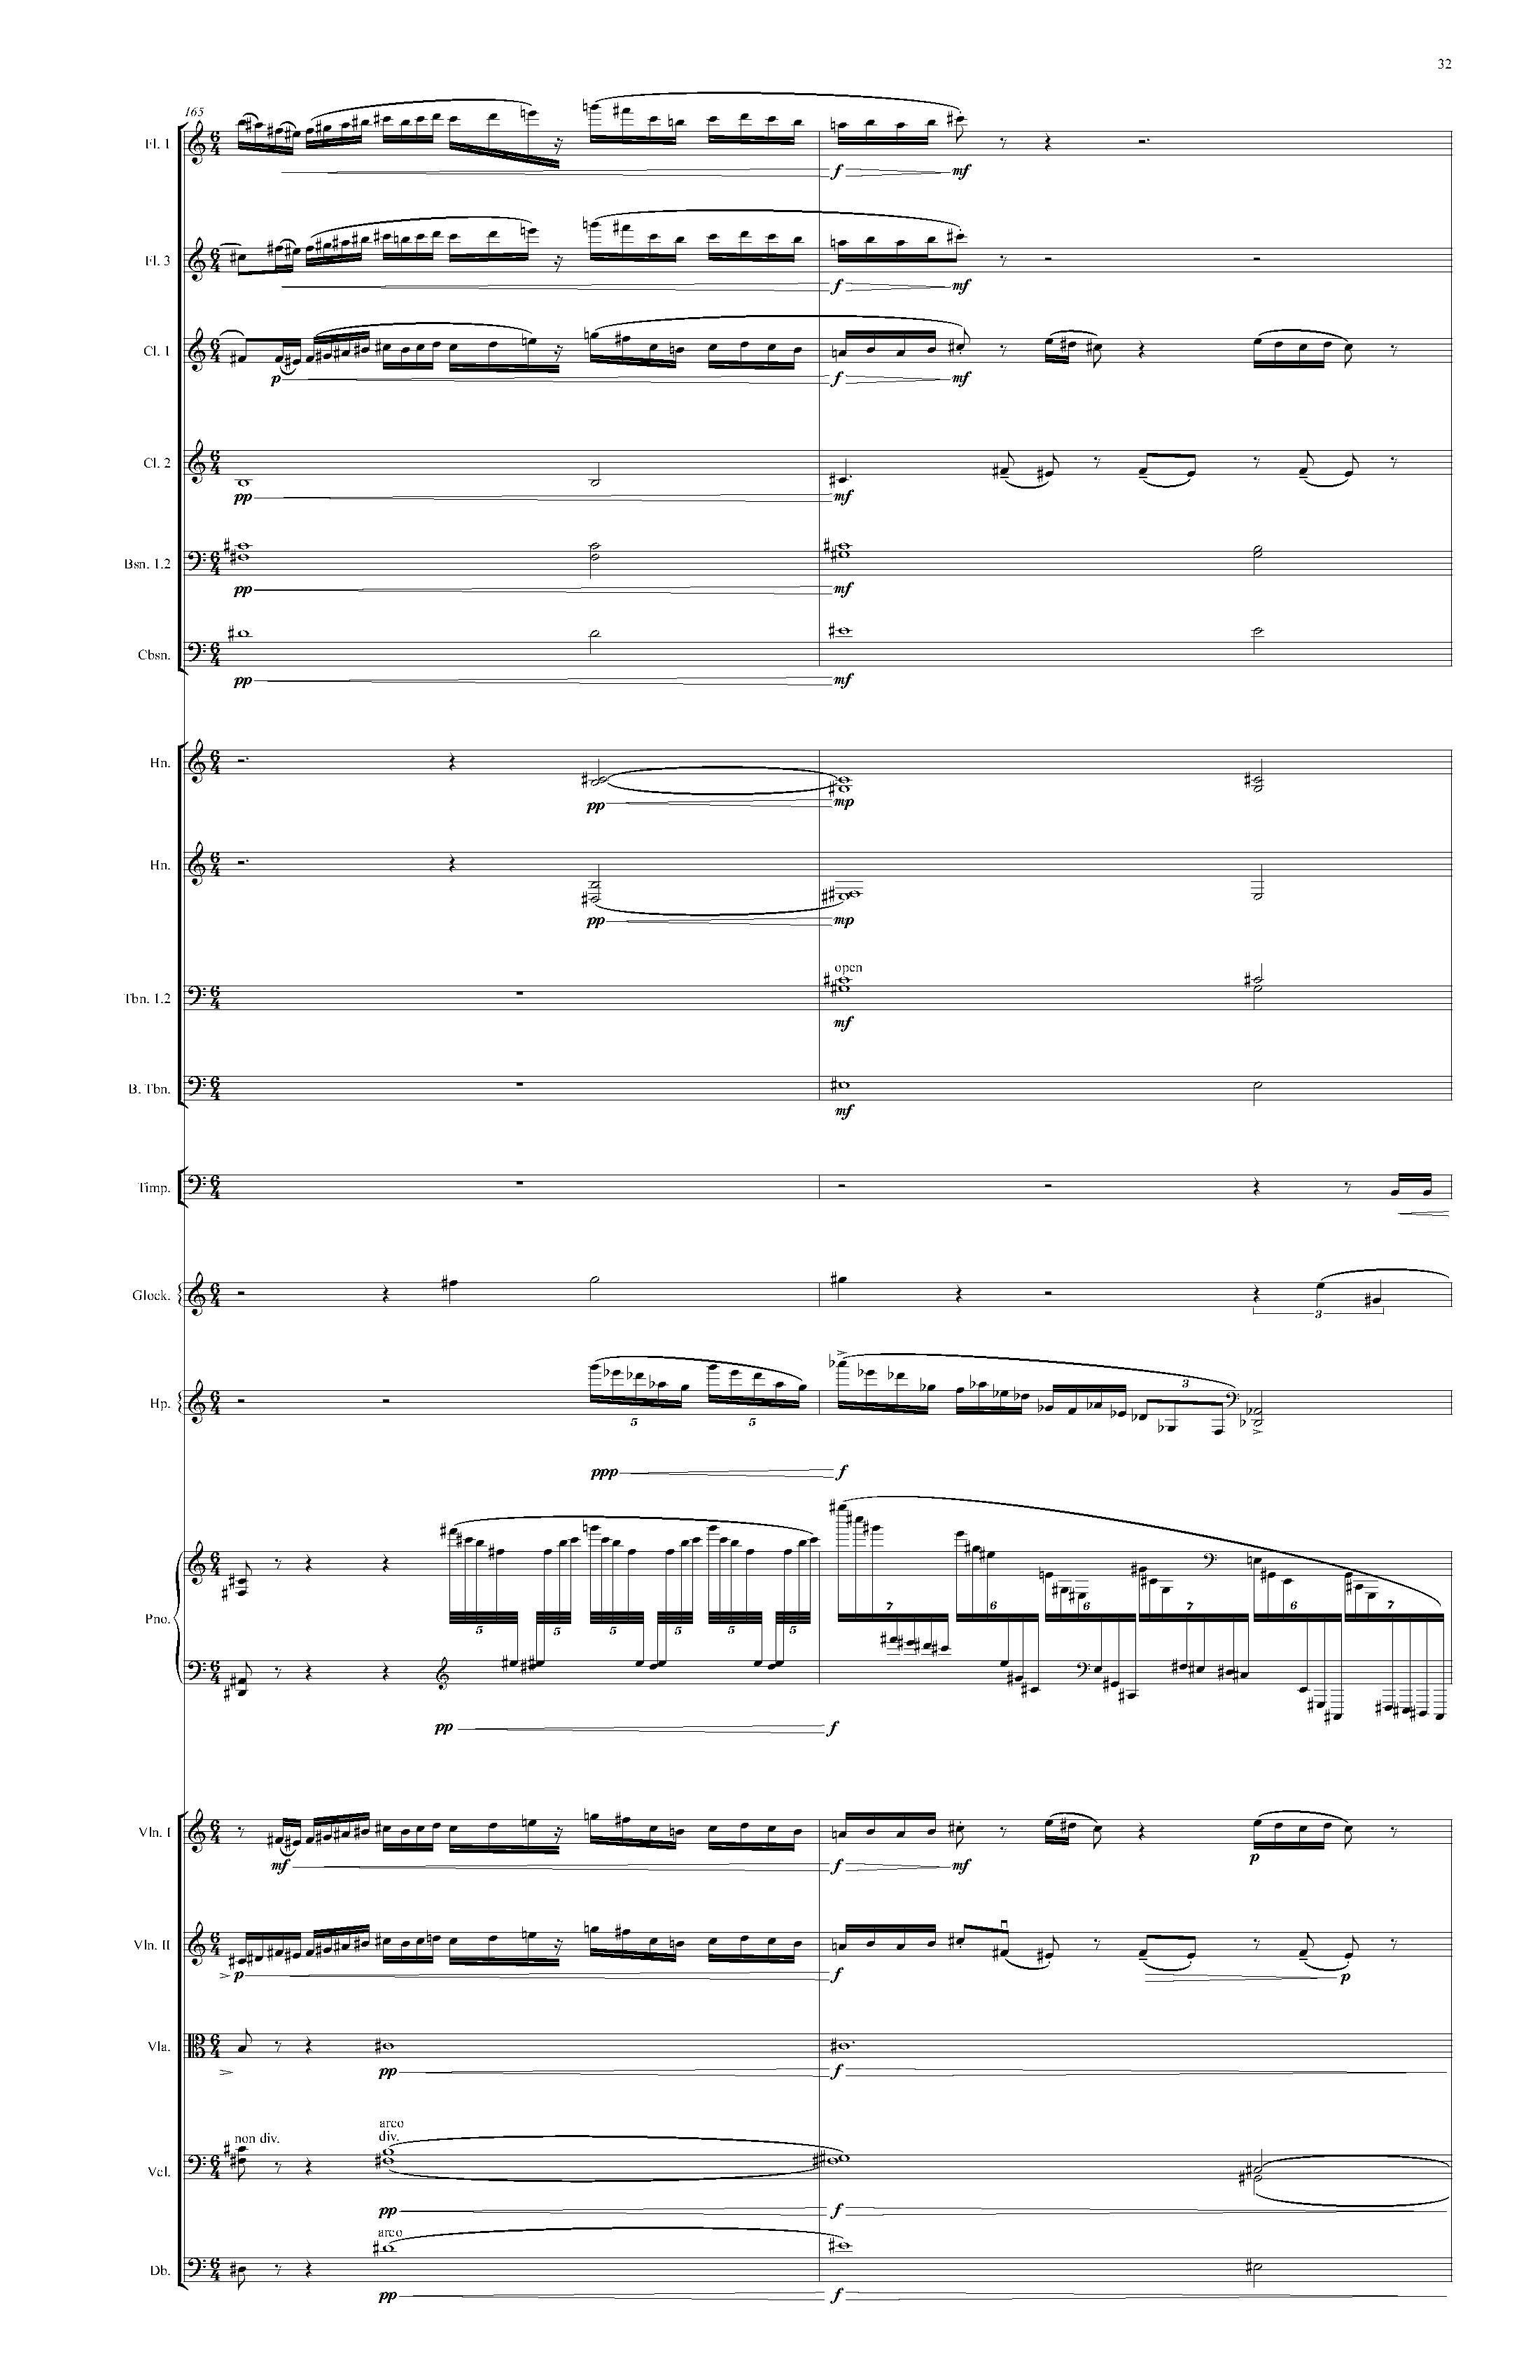 Kolmanskop 4-4-17 score - Full Score_Seite_35.jpg